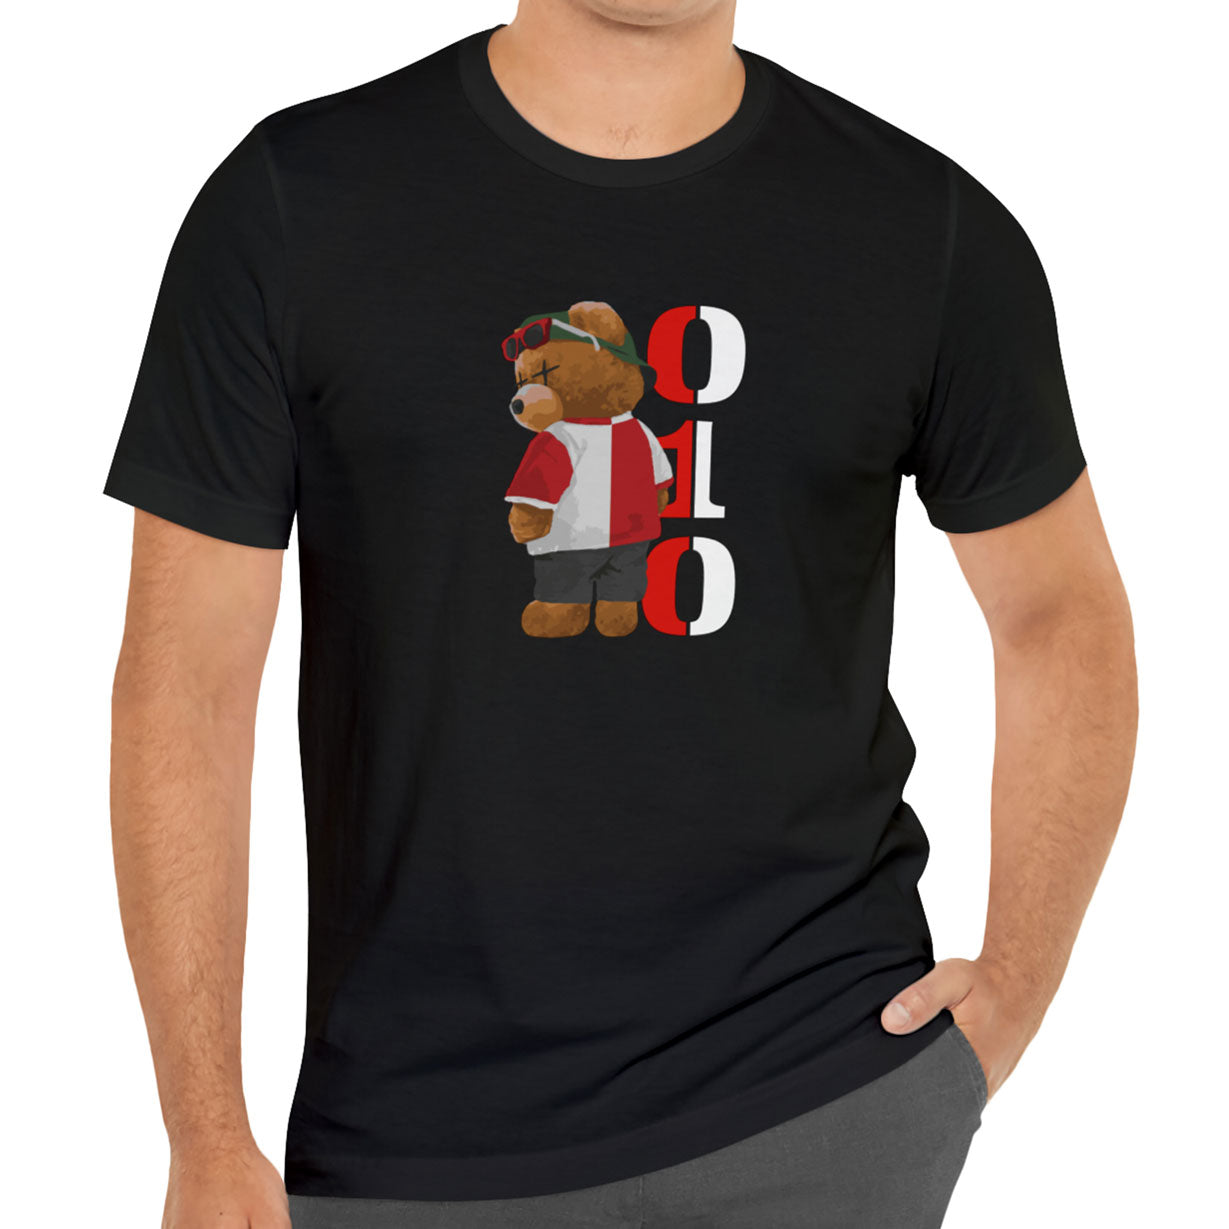 T-shirt regular - FR - 010 beer - logo voor groot